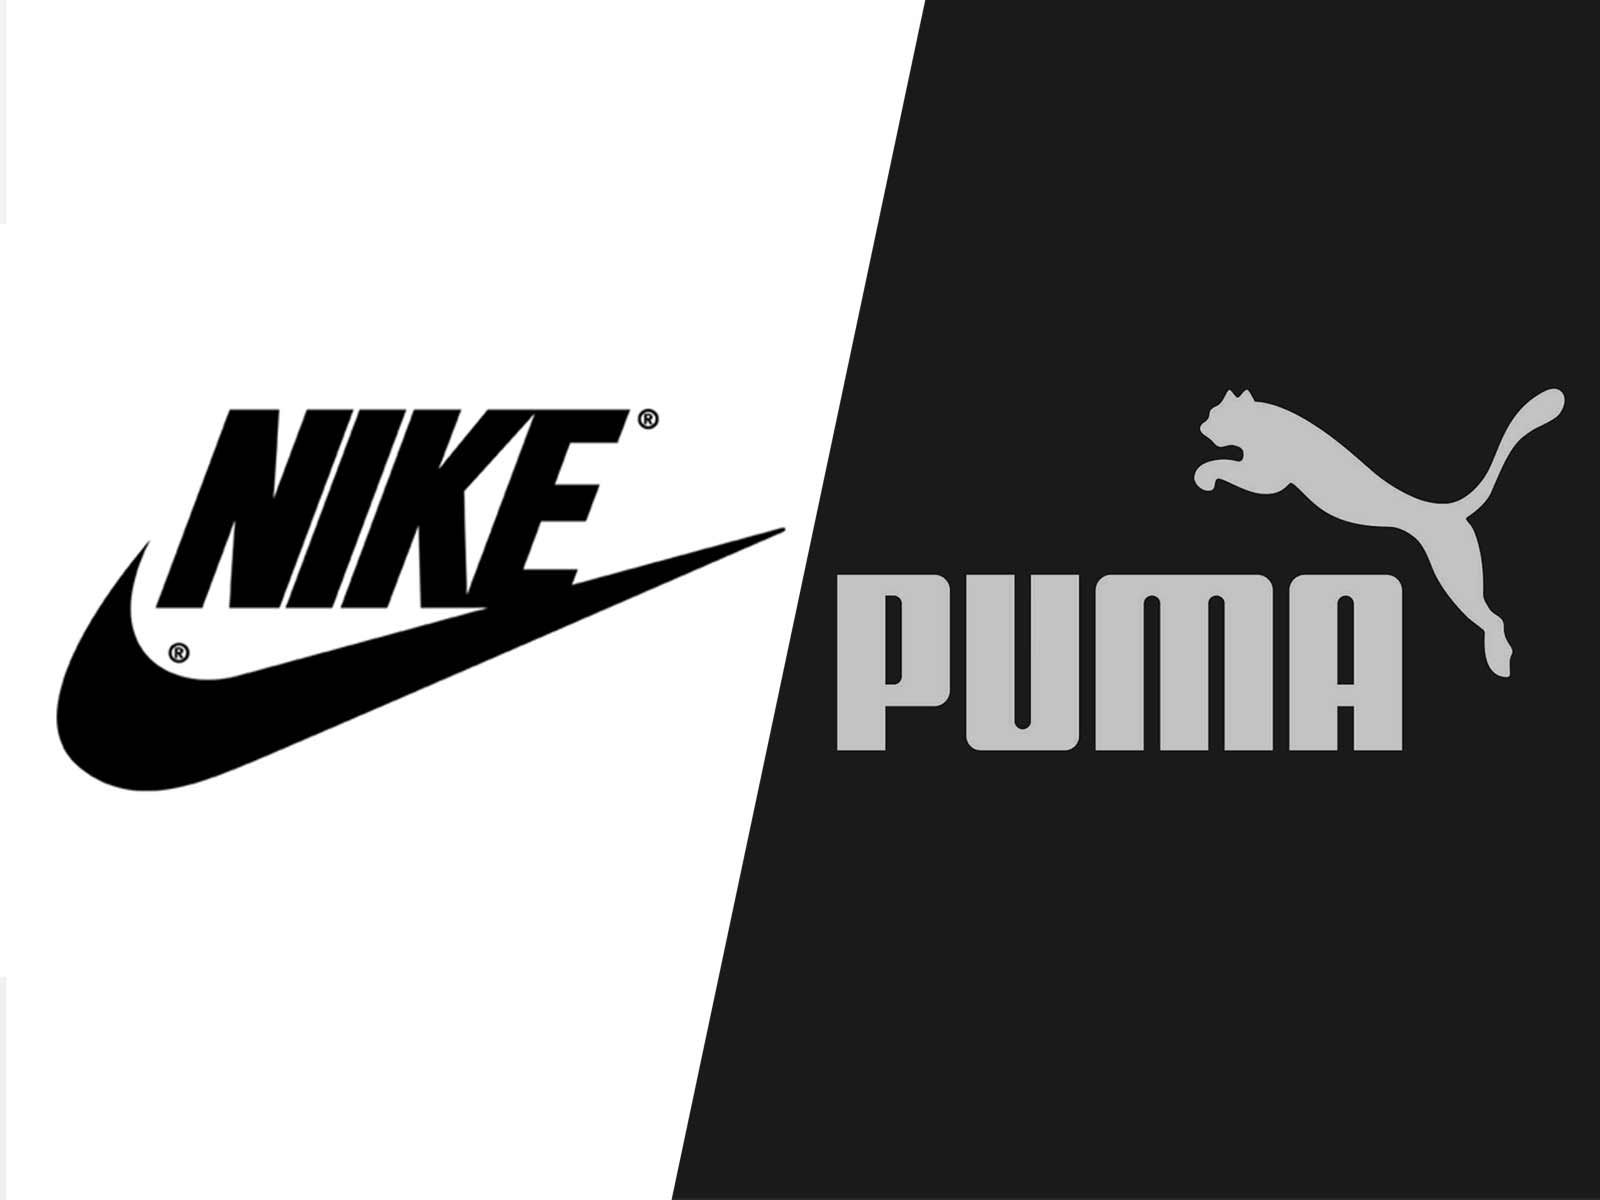 Nike Accuses Puma of Being a Footwear Copycat, Files Suit